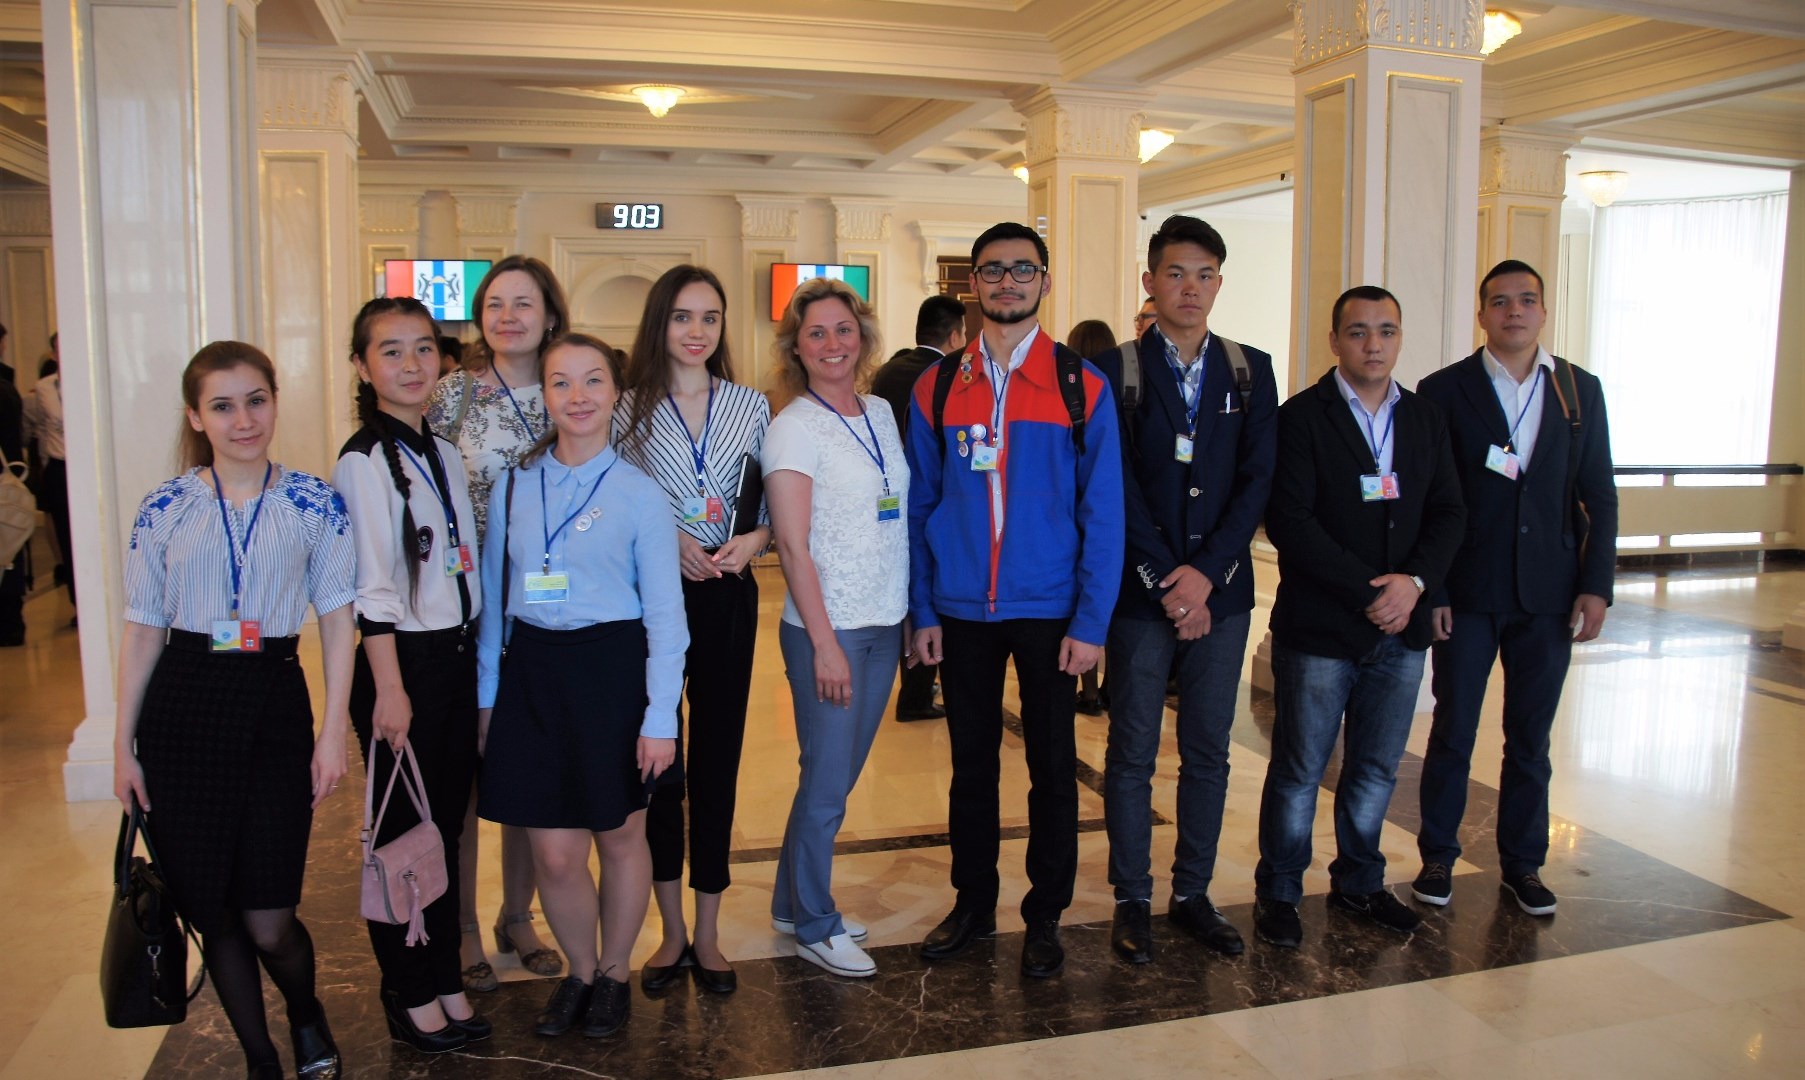 6-7 июня 2017 г. студенческая делегация Кемеровской области  (в составе студентов КемГУ, КемГИК, СибГИУ) приняла участие в работе  II Студенческого форума стран Шанхайской организации сотрудничества  в Новосибирске